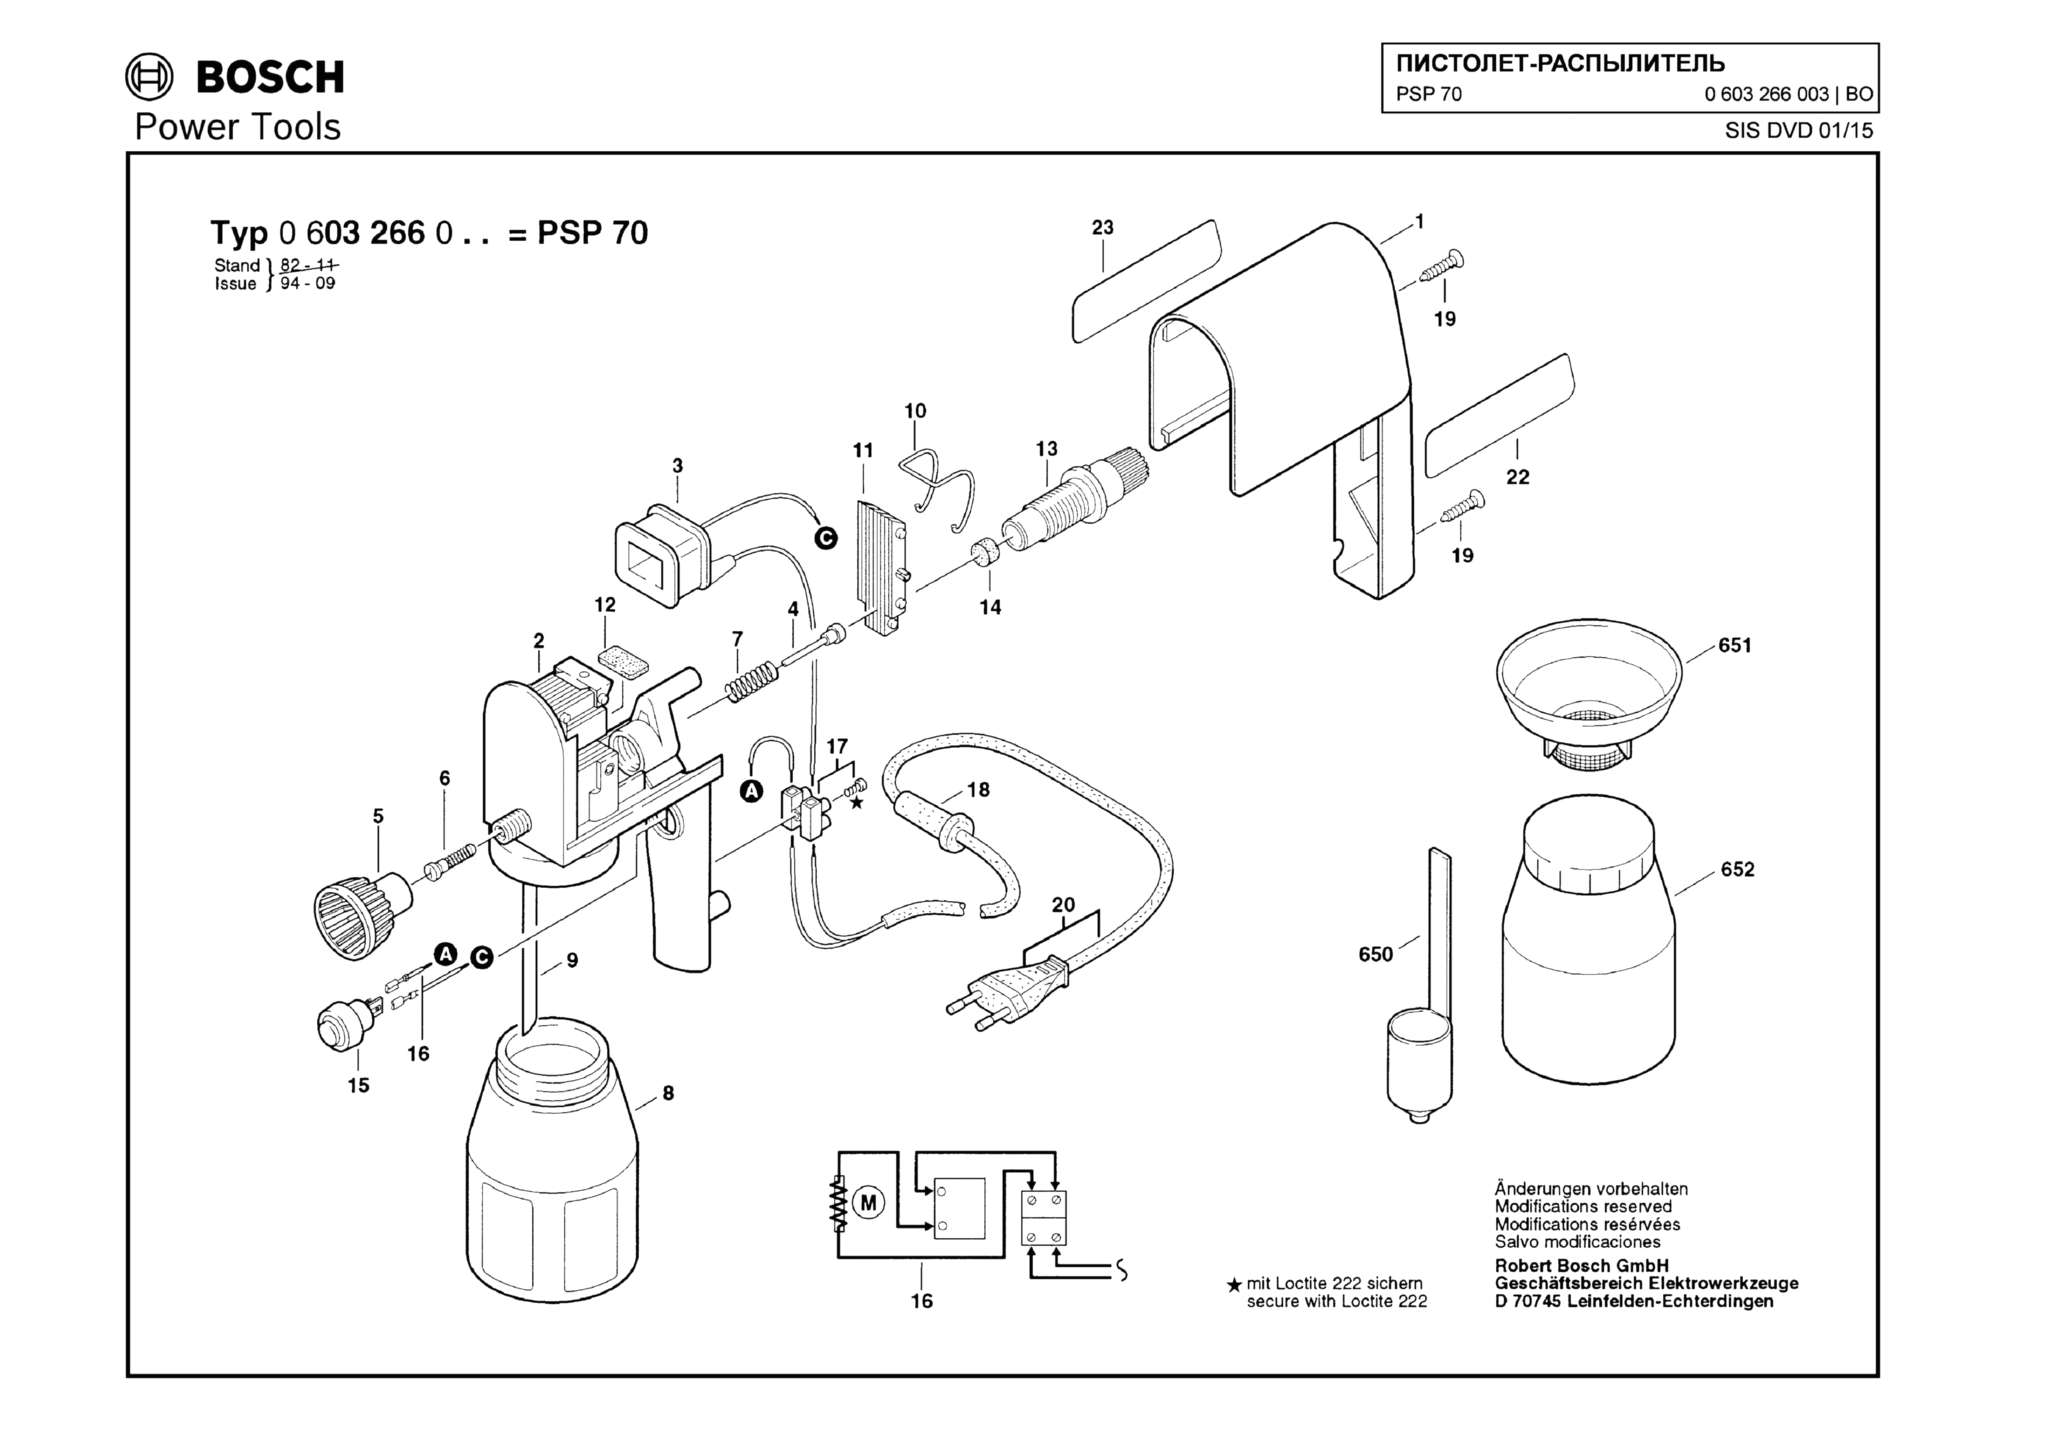 Запчасти, схема и деталировка Bosch PSP 70 (ТИП 0603266003)